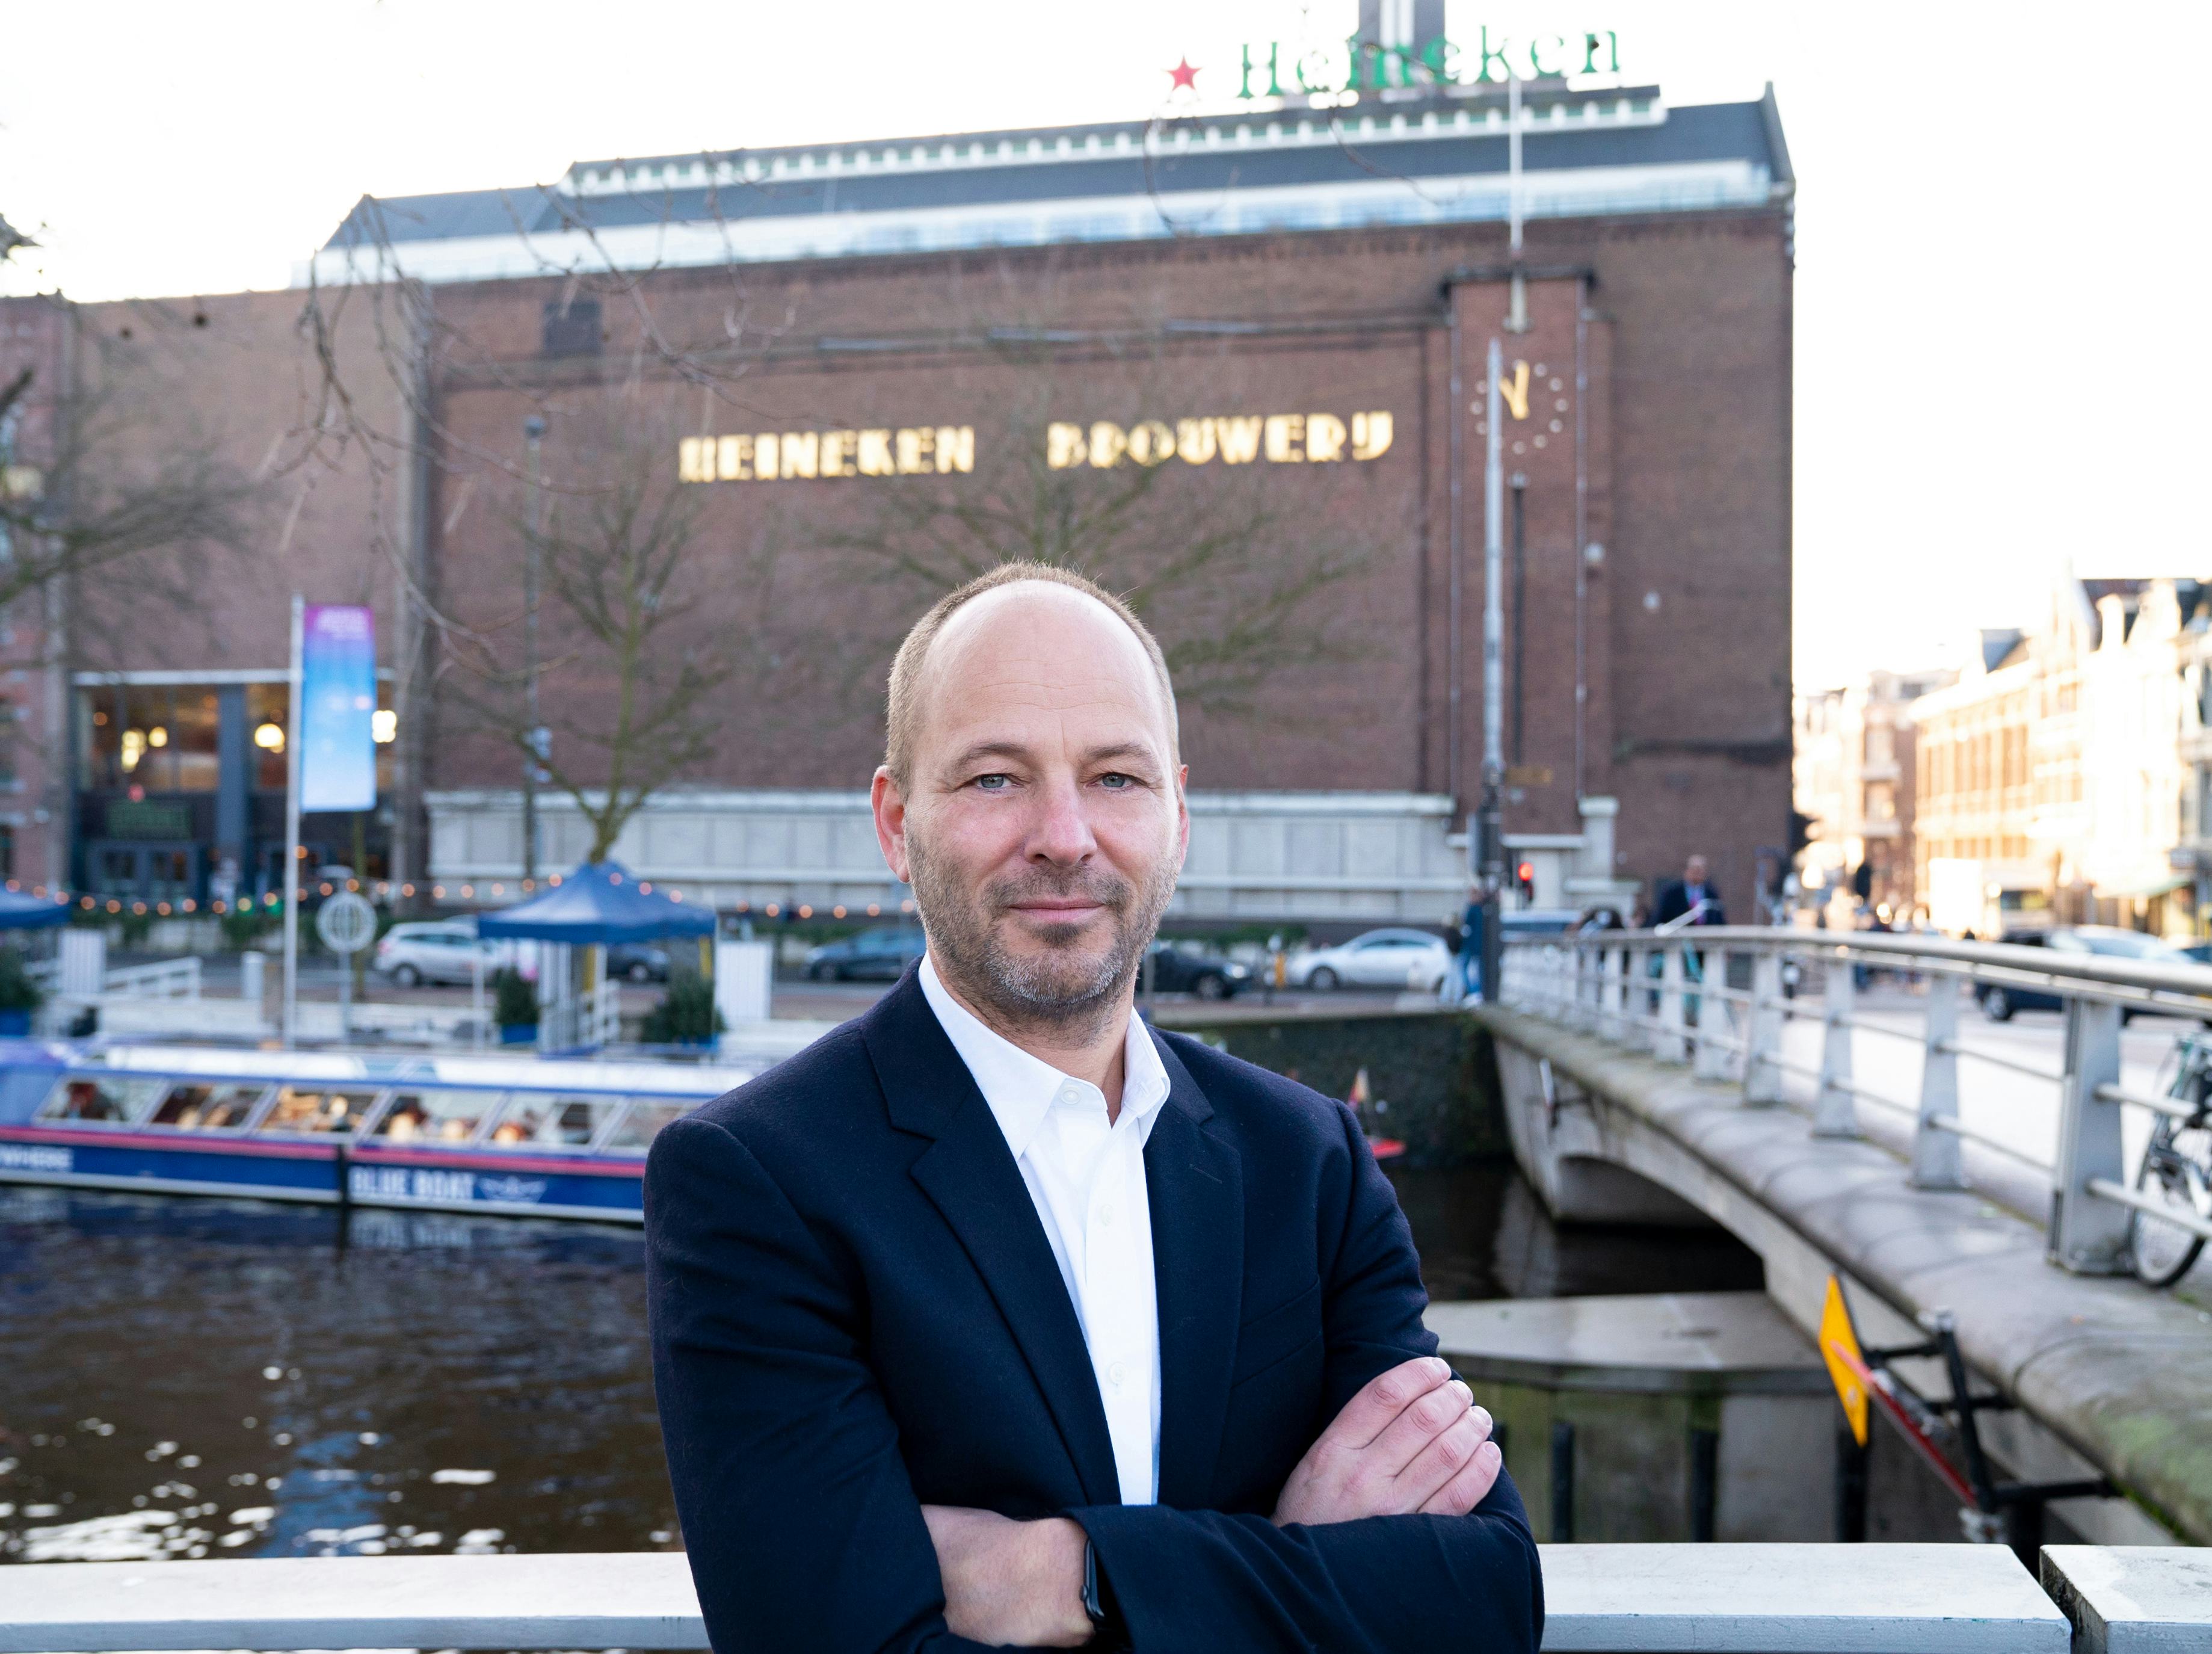 Hans Böhm -Beerwulf- volgt Pascal Gilet op als directeur Heineken Nederland